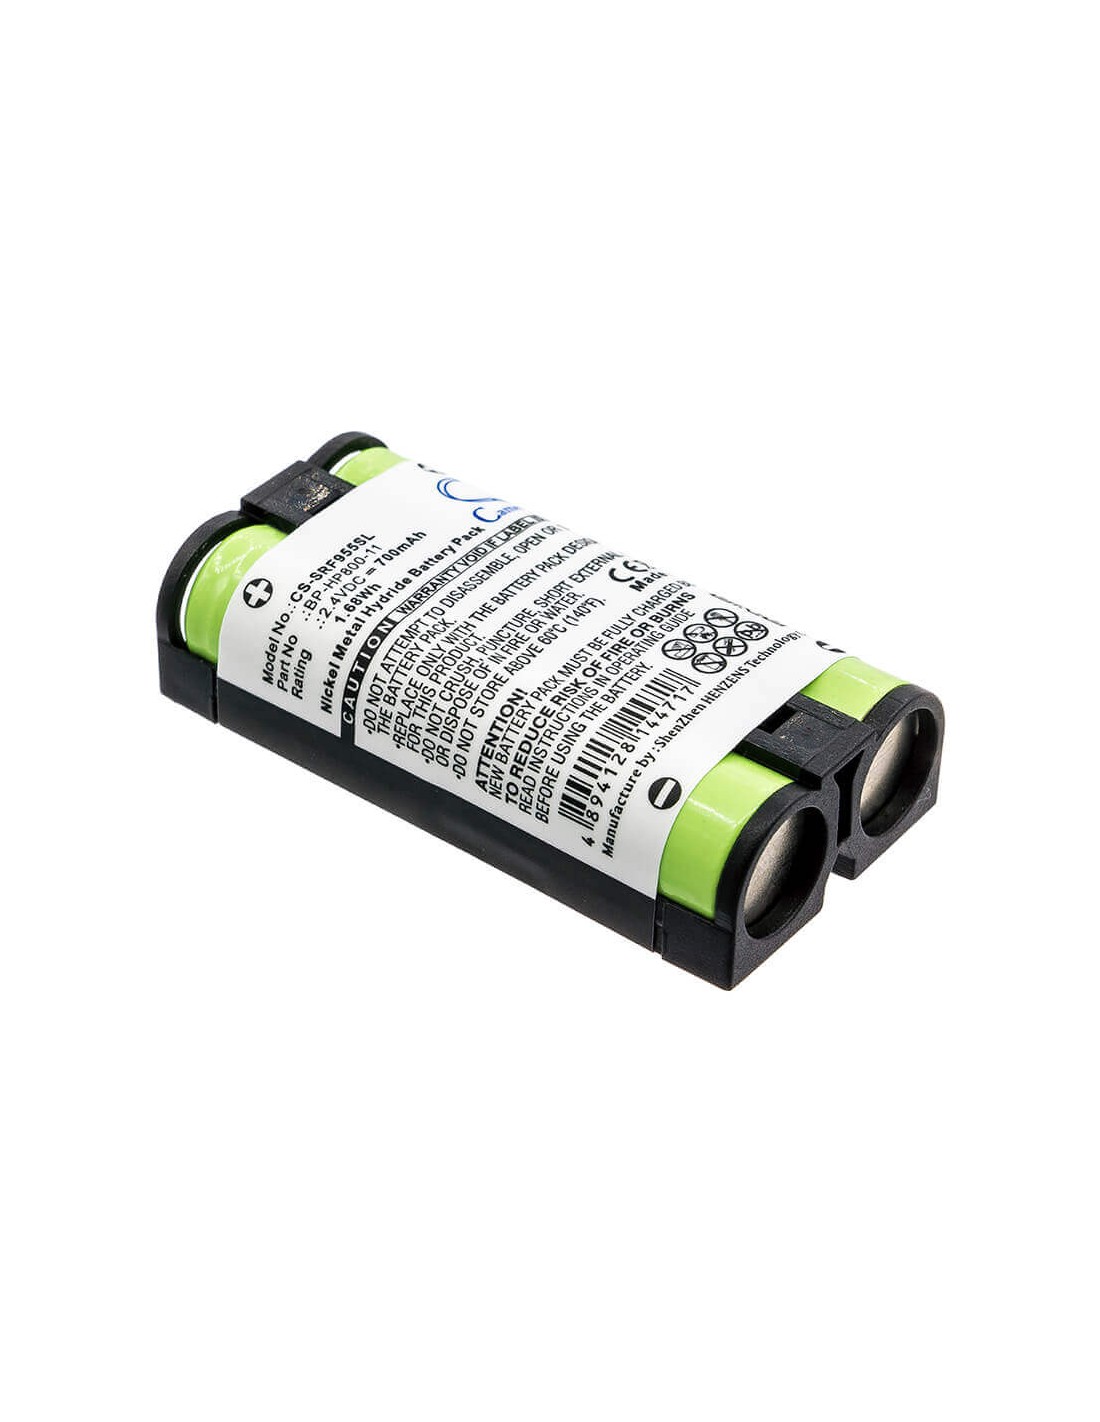 Battery for Sony, Mdr-rf995, Mdr-rf995rk, Wh-rf400 2.4V, 700mAh - 1.68Wh